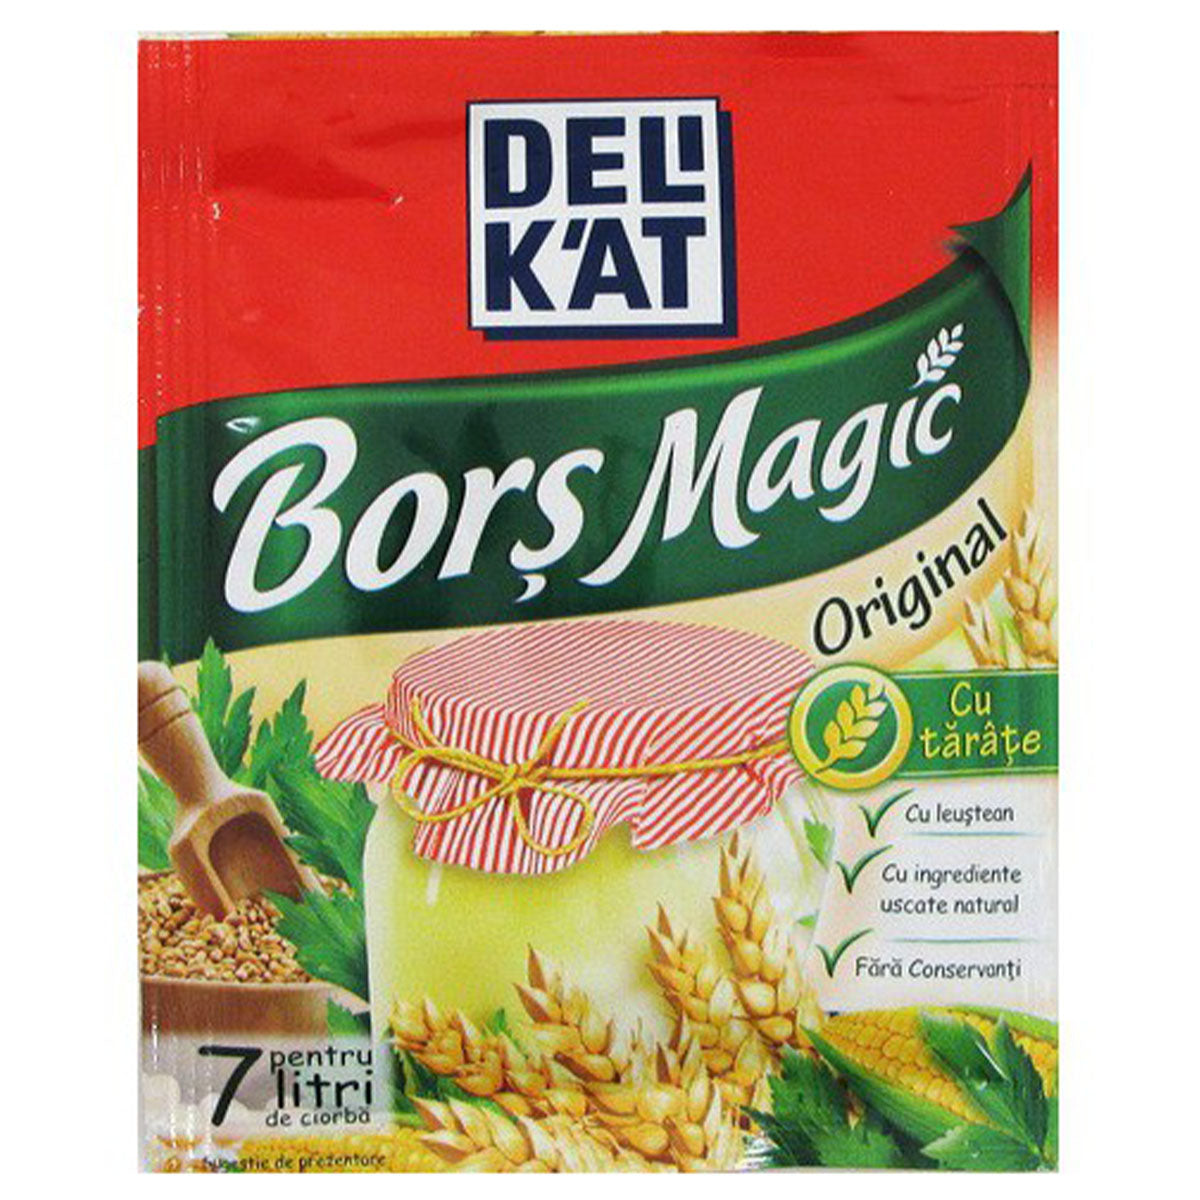 DeliKat - Bors Magic Original Tarate & Leustean 15 - 20g - Continental Food Store